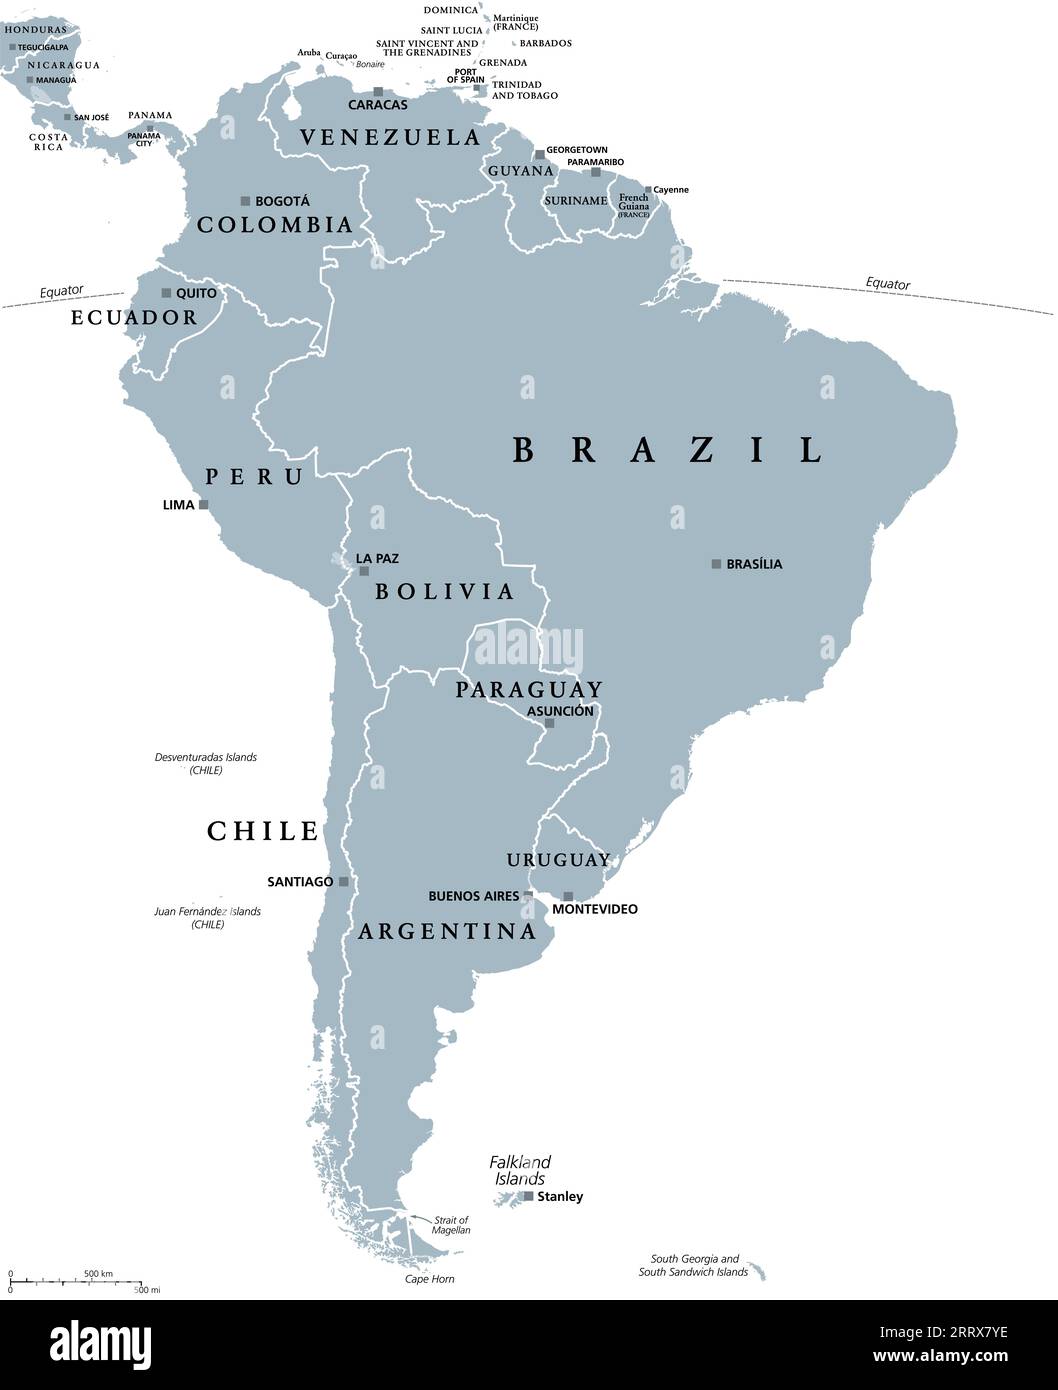 Südamerika, graue politische Landkarte mit internationalen Grenzen und Hauptstädten. Ein Kontinent, der vom Pazifik und Atlantik, Nordamerika usw. begrenzt wird Stockfoto